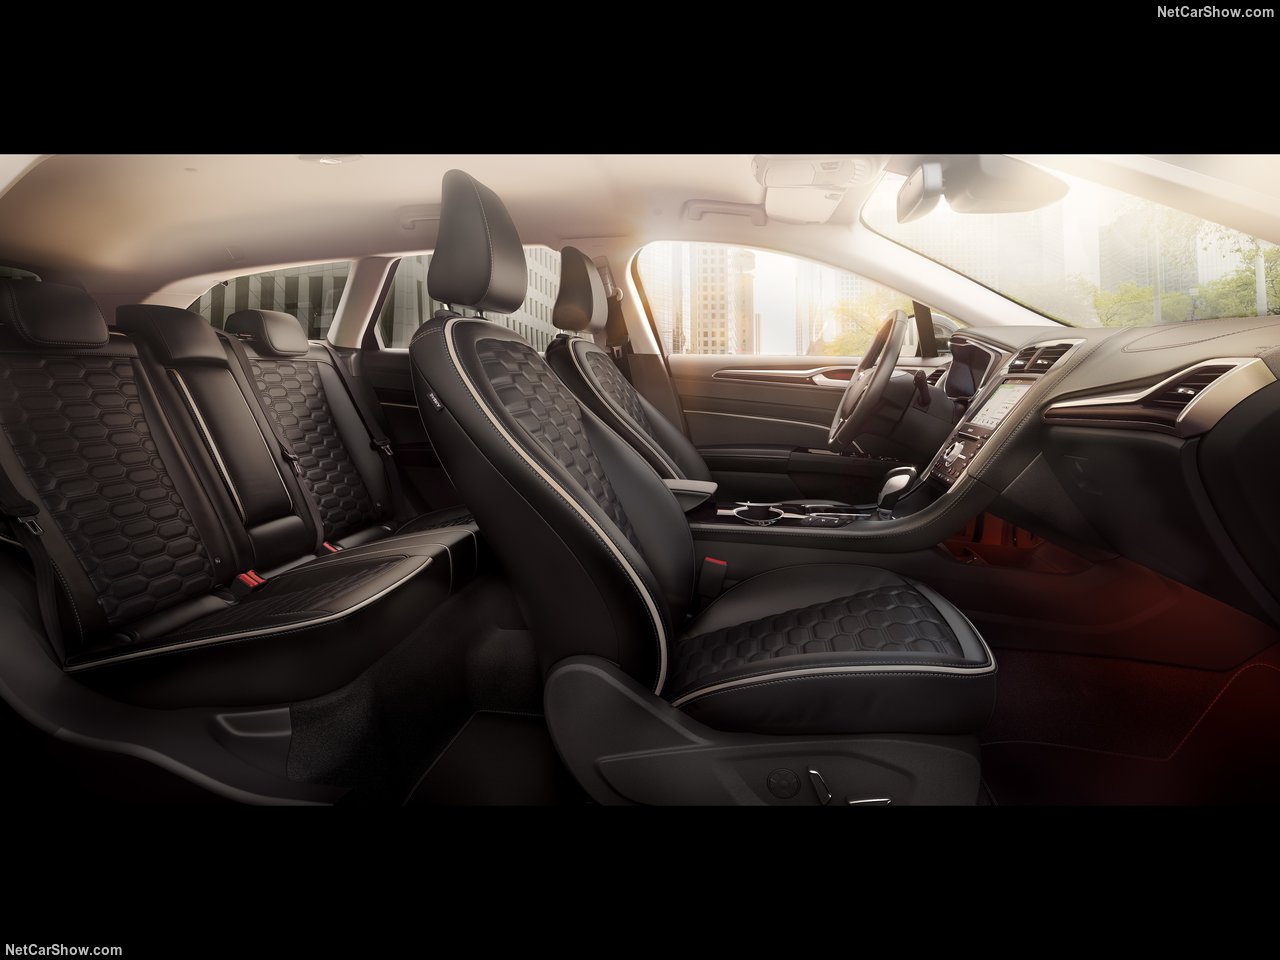 2019 Ford Mondeo Wagon Hyibrid tanıtıldı! İşte Mondeo’nun fiyatı ve özellikleri